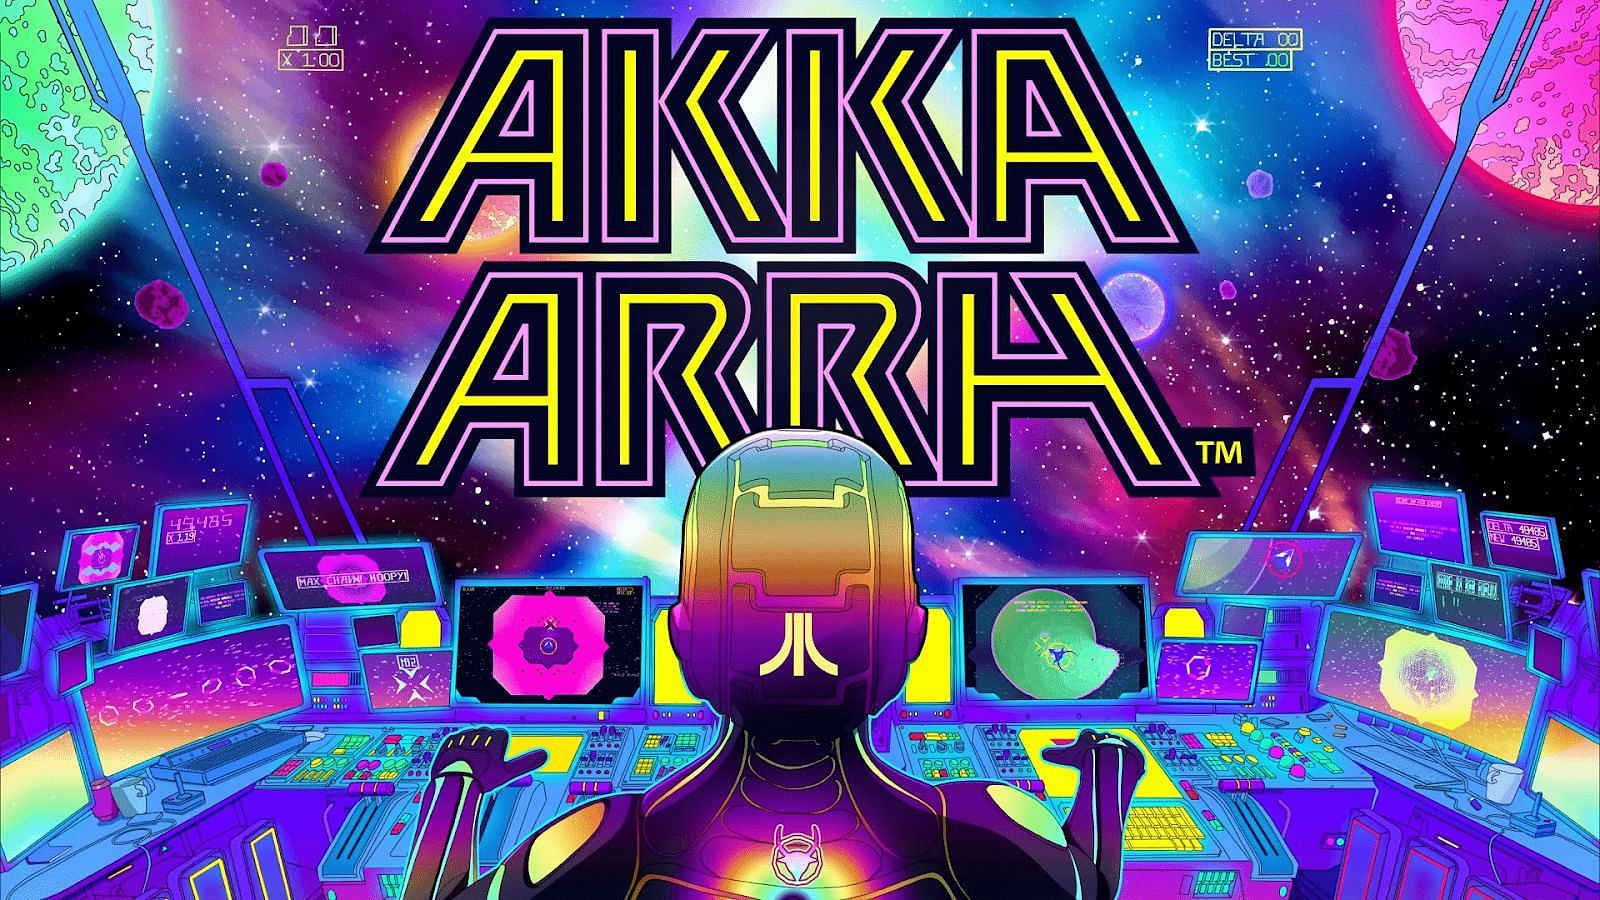 Akka Arrh: A Challenging 2D Adventure Game